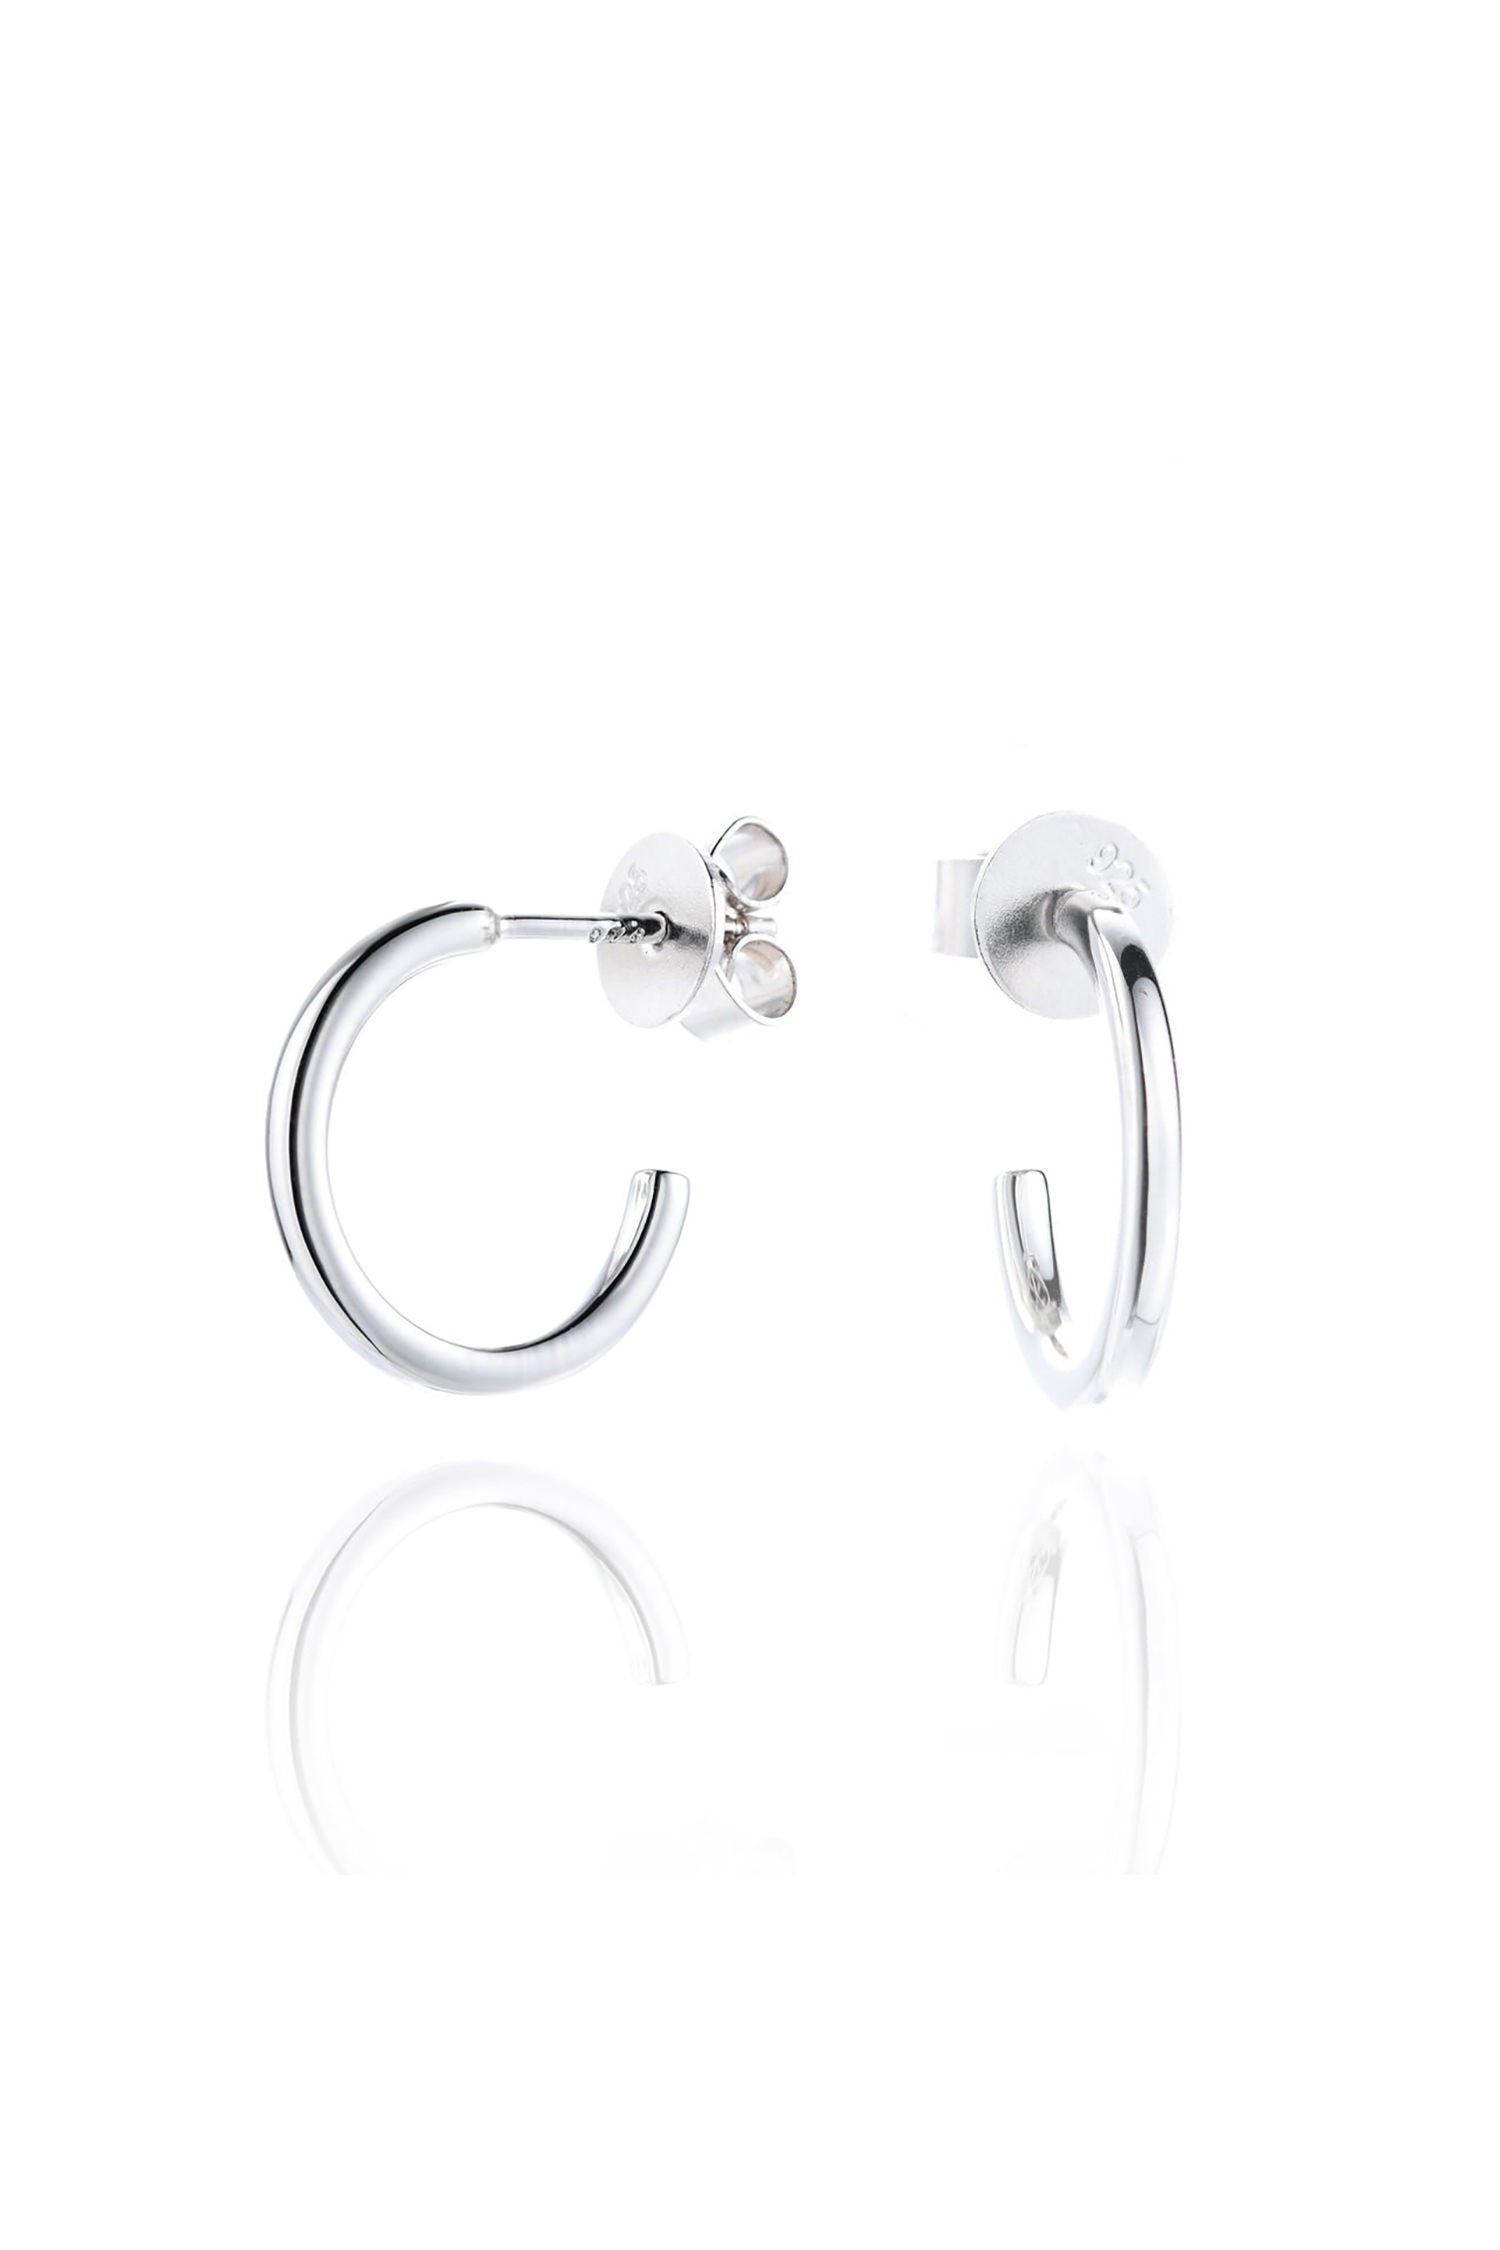  Mini Open Hoop Earrings Sterling Silver White Background